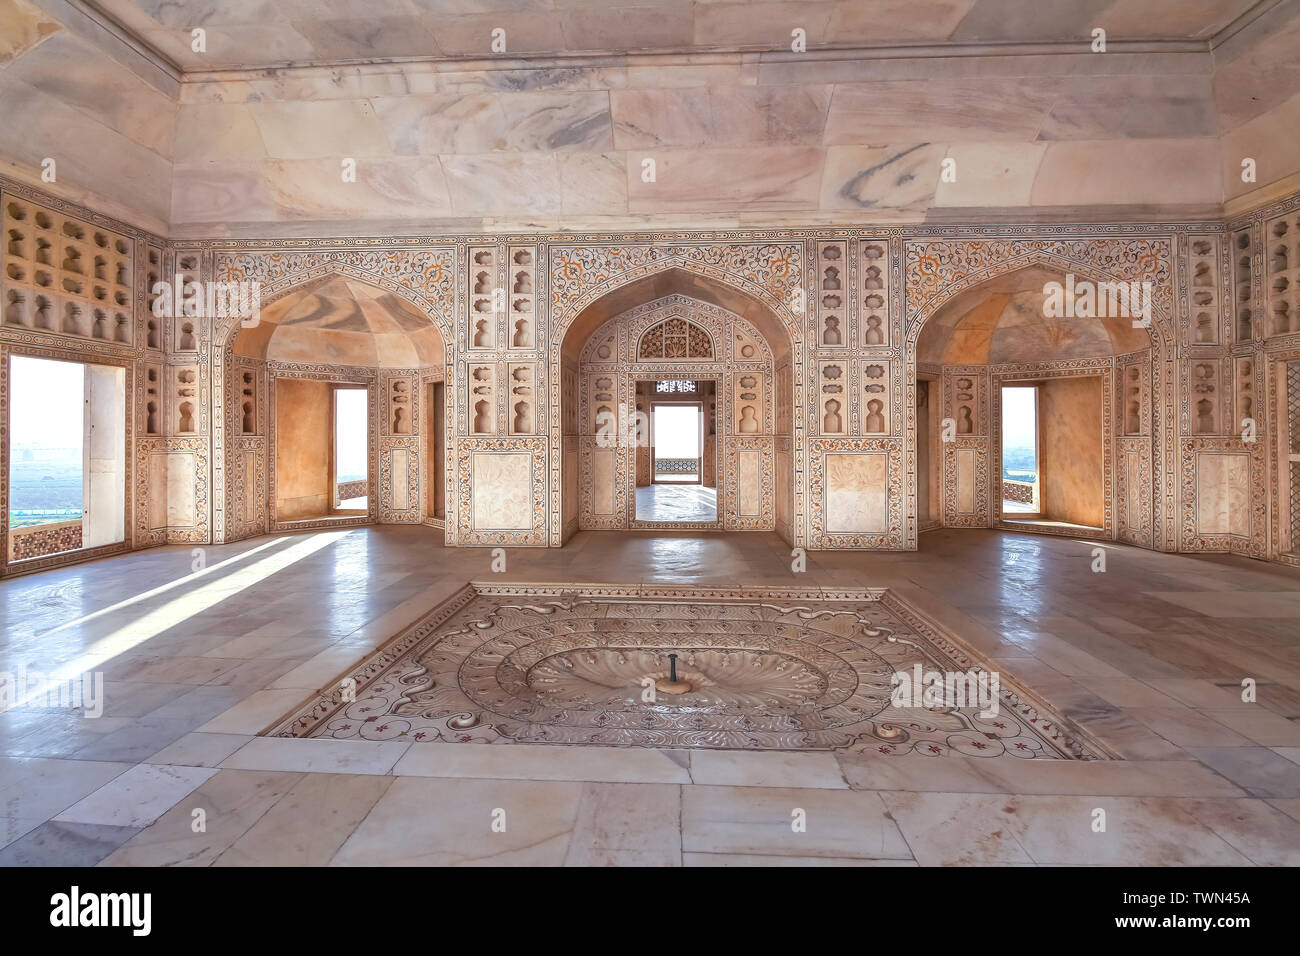 Agra Fort weißer Marmor Architektur mit aufwändigen Wand artwork Schnitzereien. Agra Fort ist ein UNESCO Weltkulturerbe Stockfoto